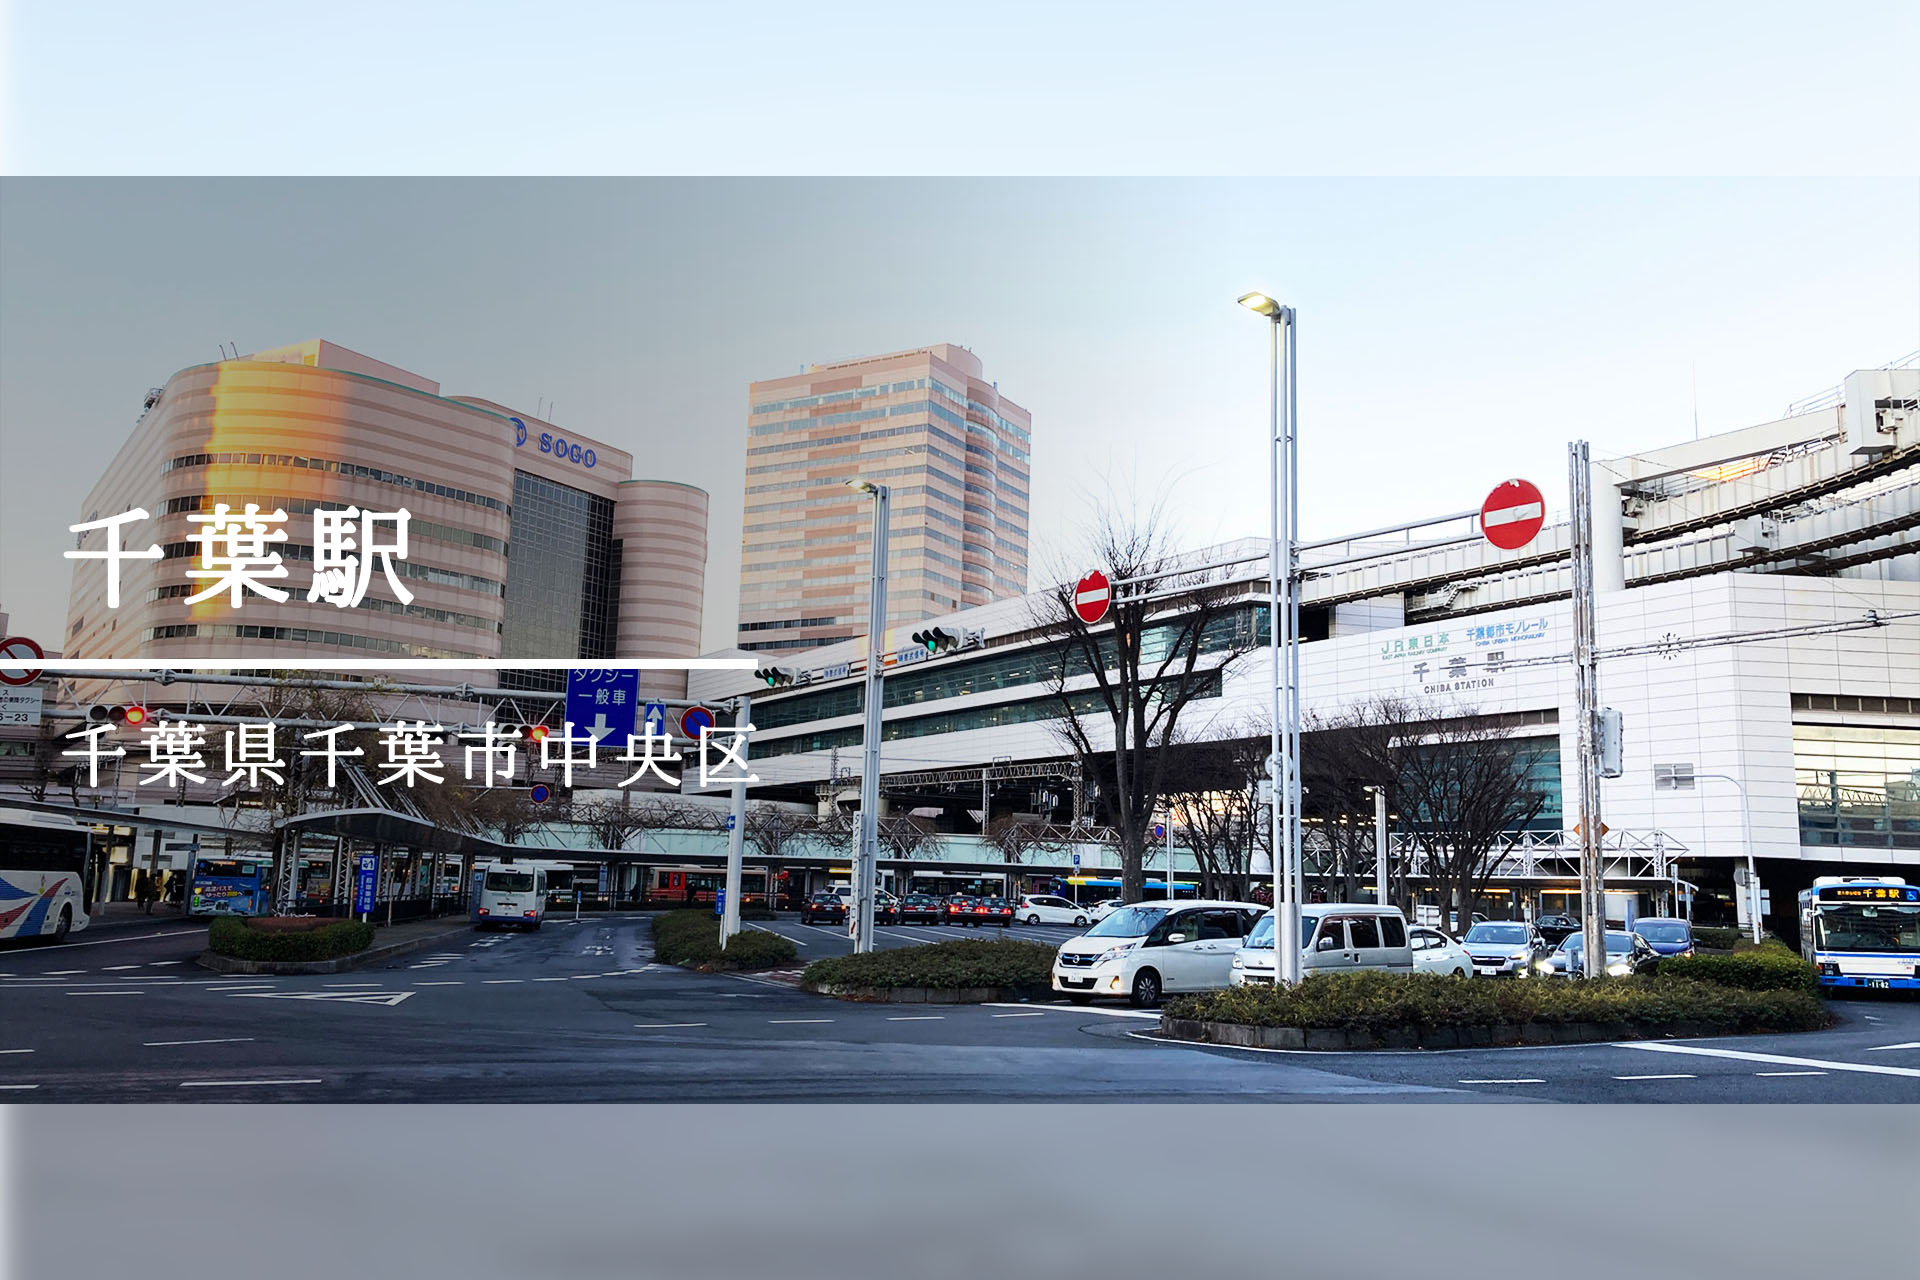 千葉駅周辺 ―千葉県の中核都市、駅を中心に発展する街―